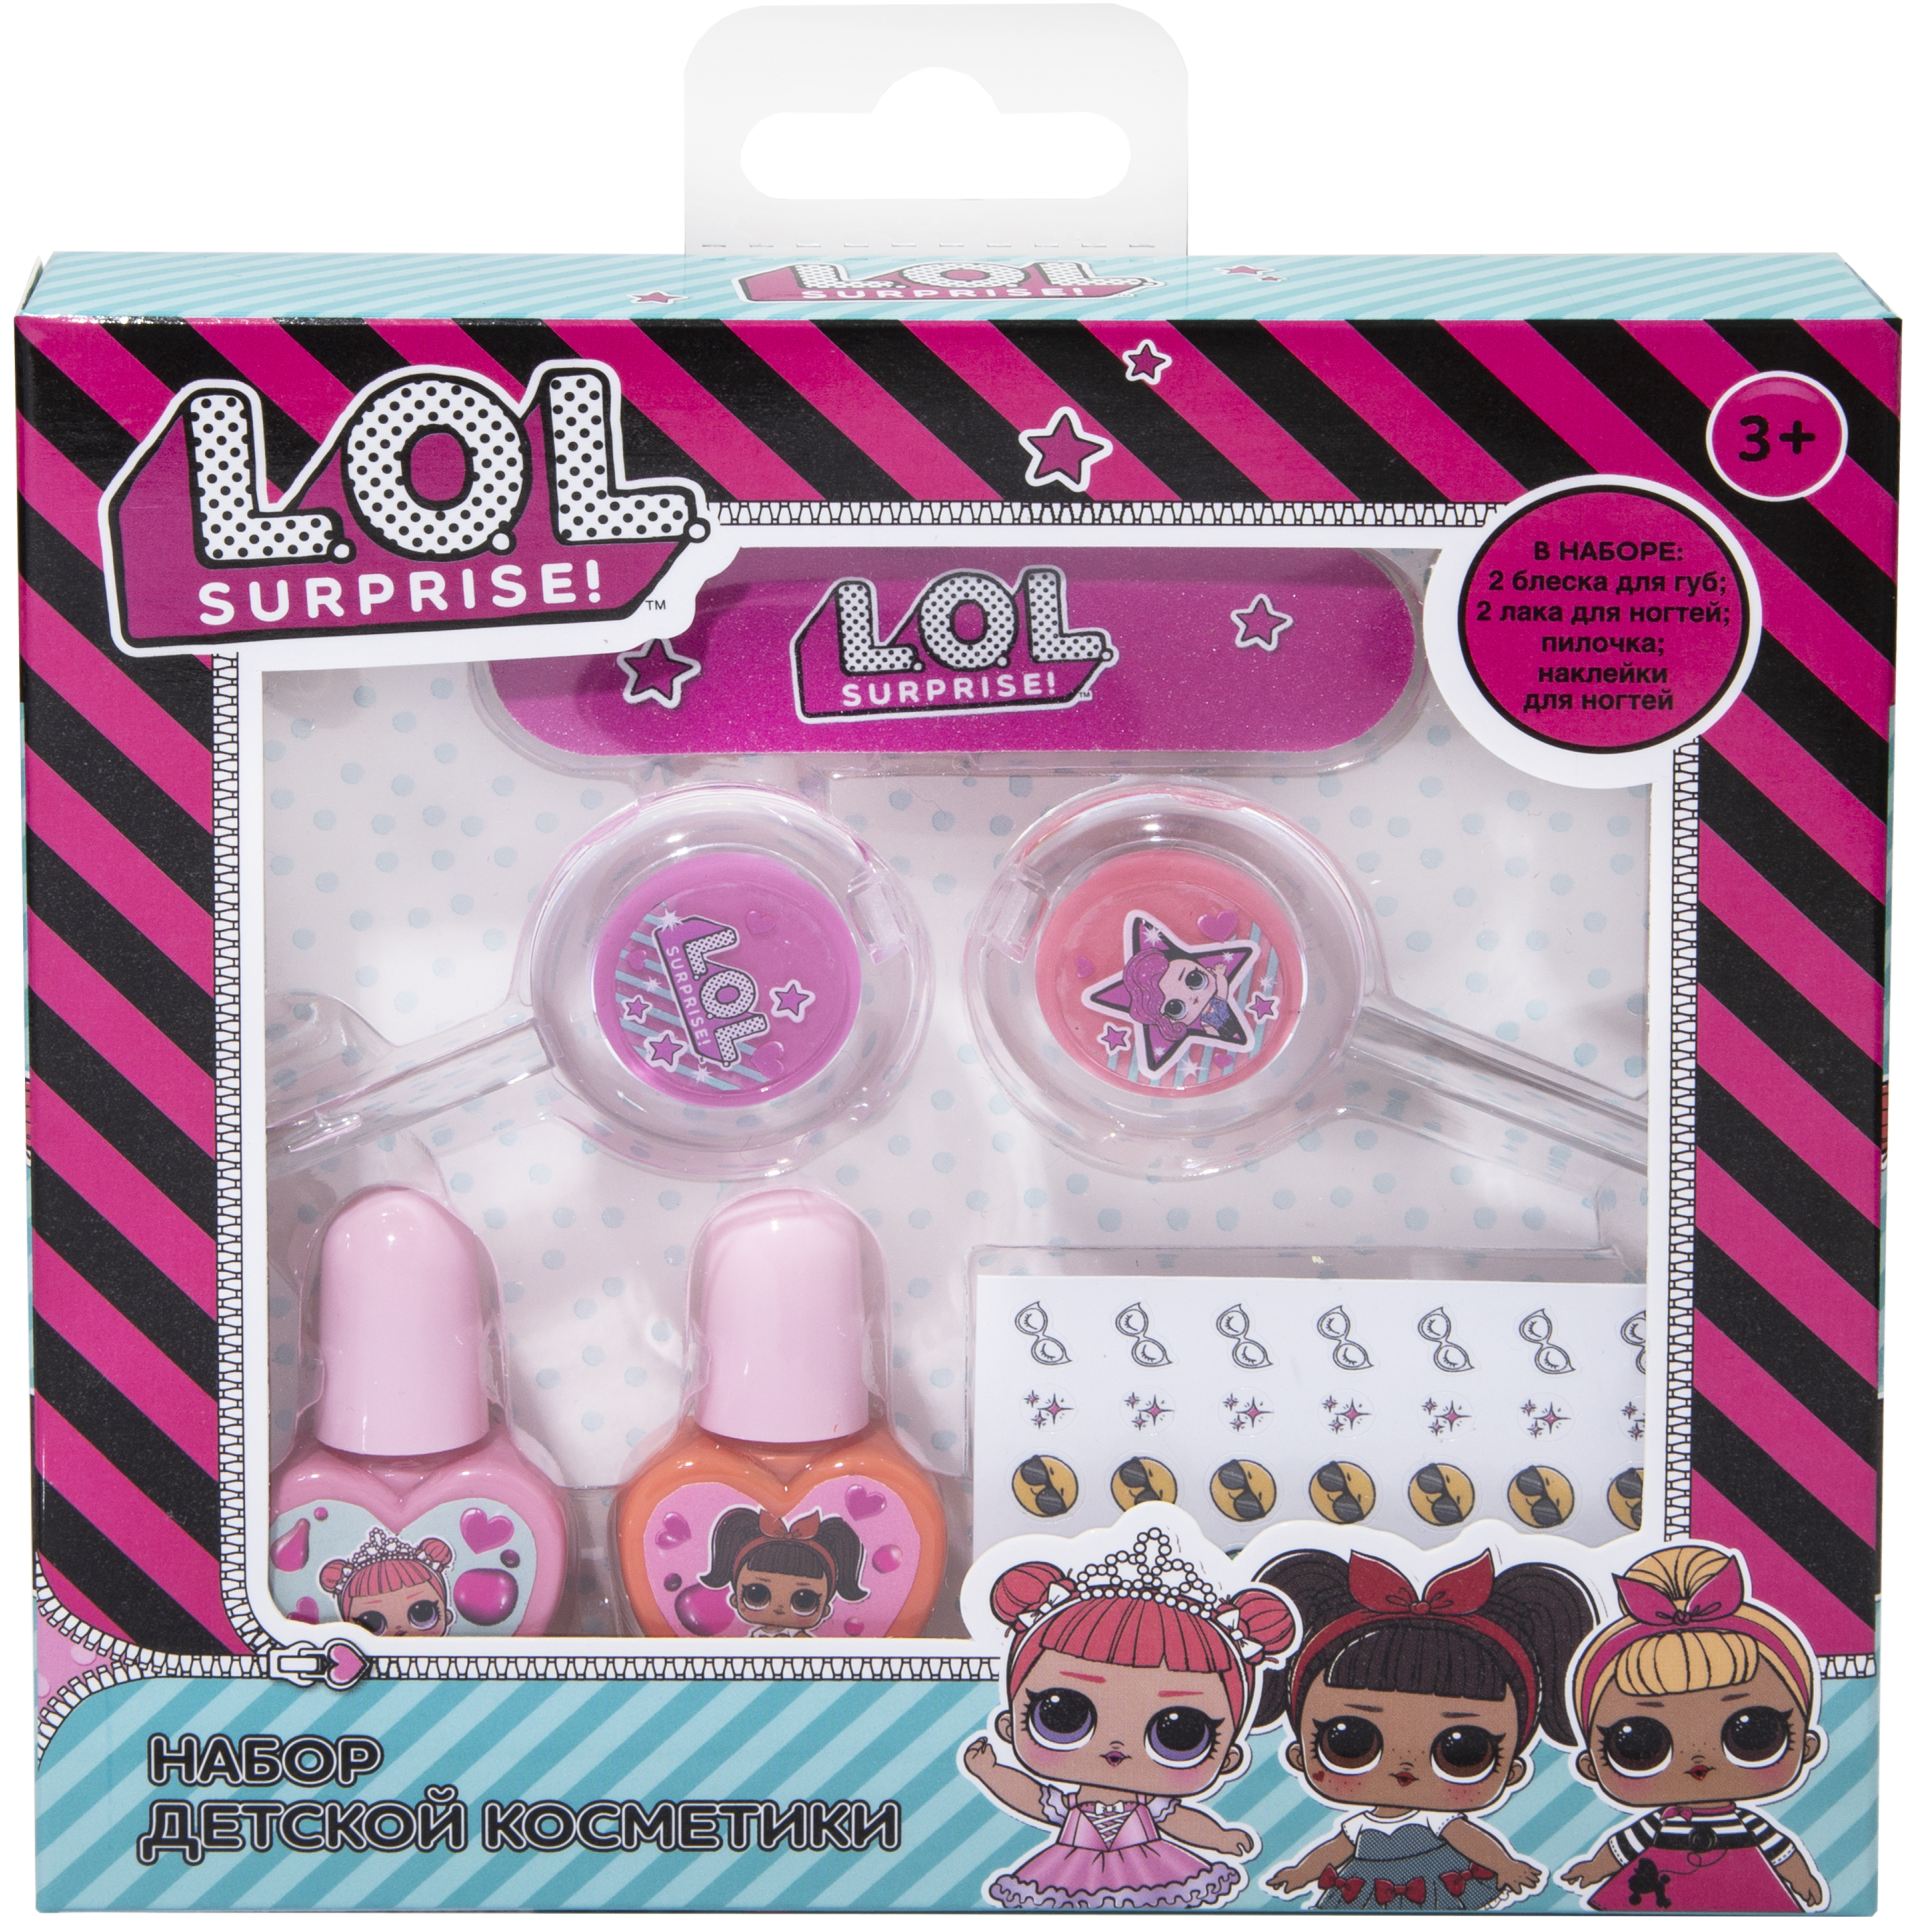 Набор детской косметики L.O.L. для губ и ногтей YZ-1601